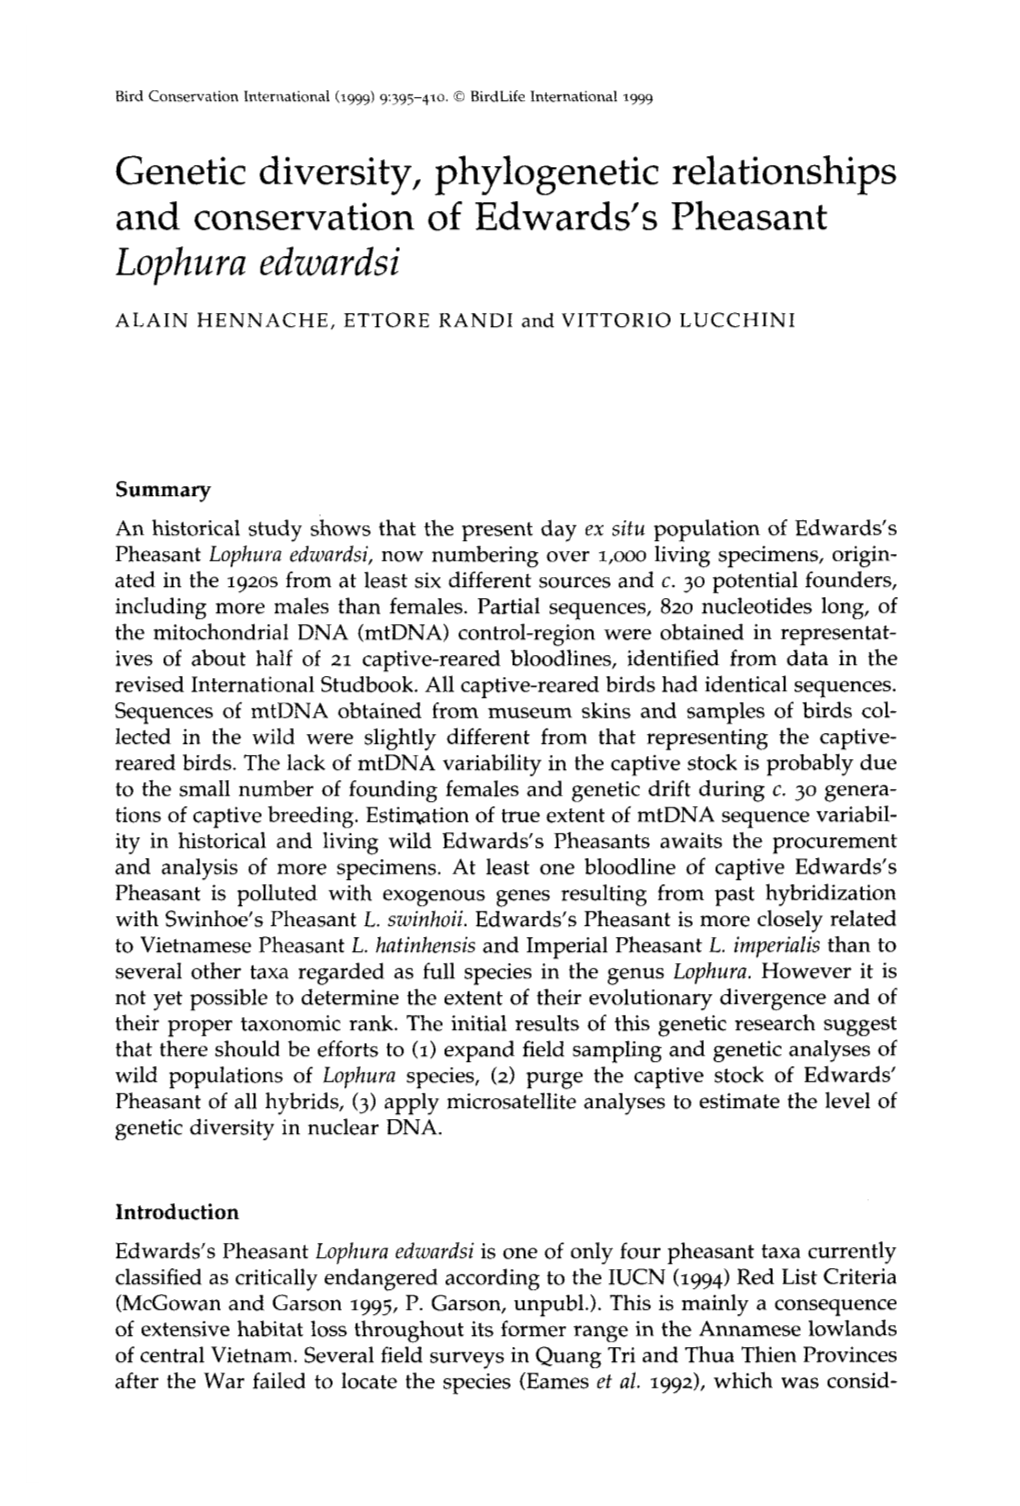 Genetic Diversity, Phylogenetic Relationships and Conservation of Edwards's Pheasant Lophura Edwardsi